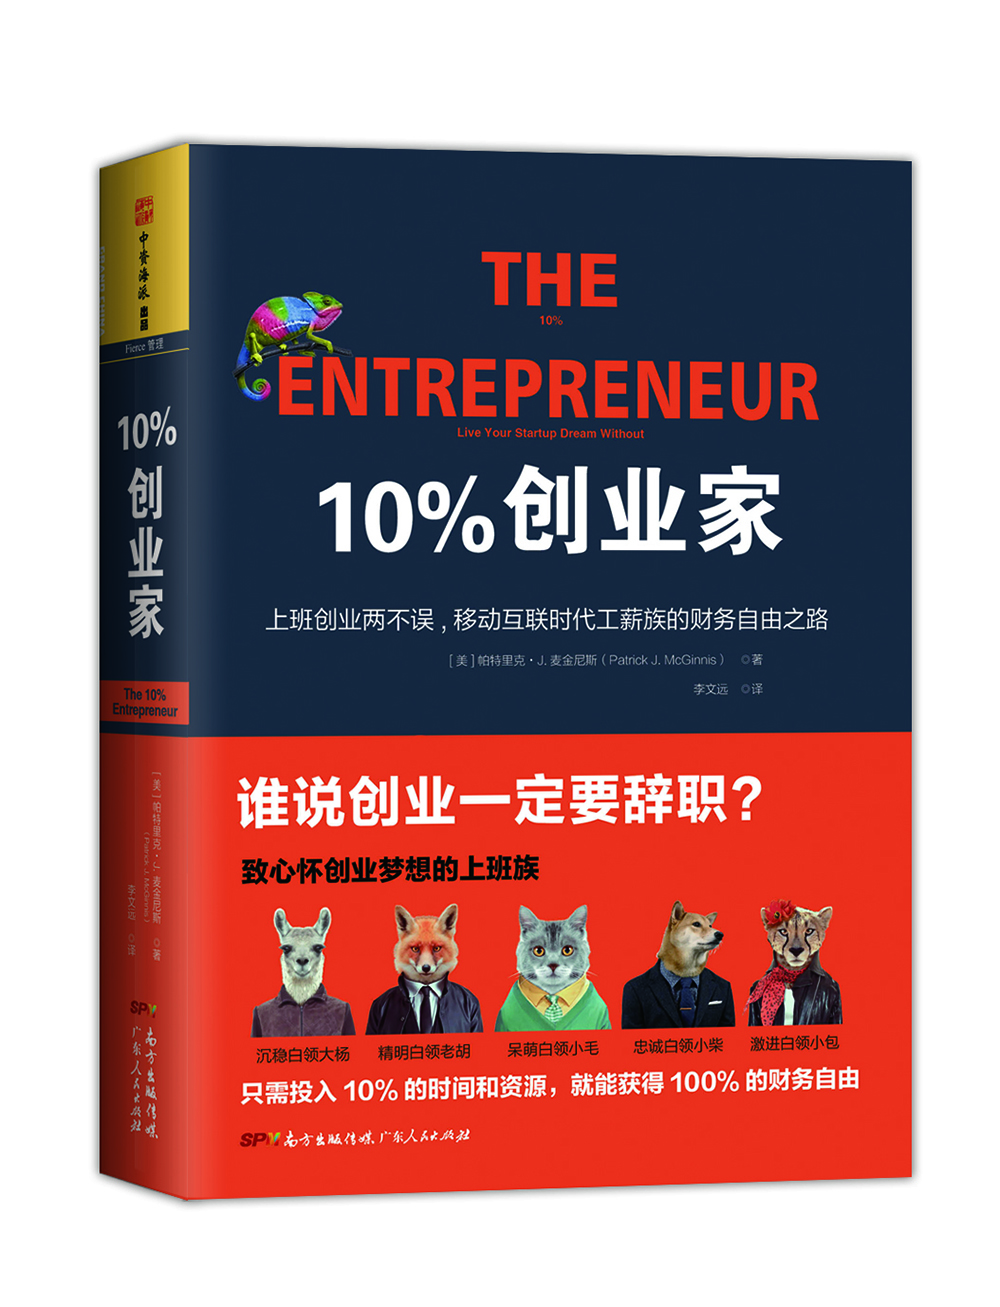 10%创业家:上班创业两不误，移动互联时代工薪族的财务自由之路  [The 10% Entrepreneur]